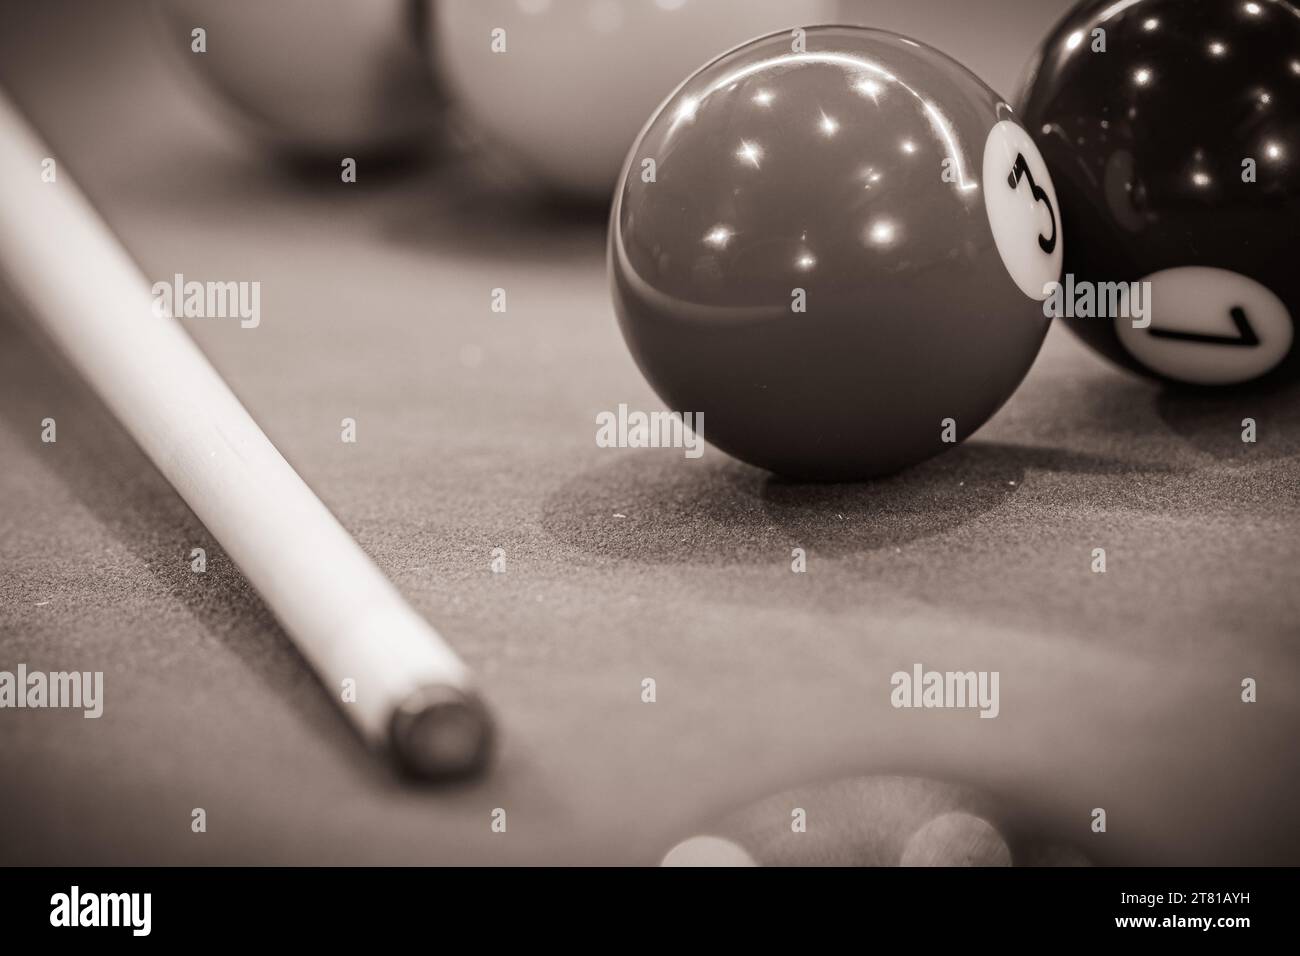 Billardtisch mit bunten Billardbälle, bereit für ein aufregendes Spiel mit Queuessport. Schwarzweißbild Stockfoto